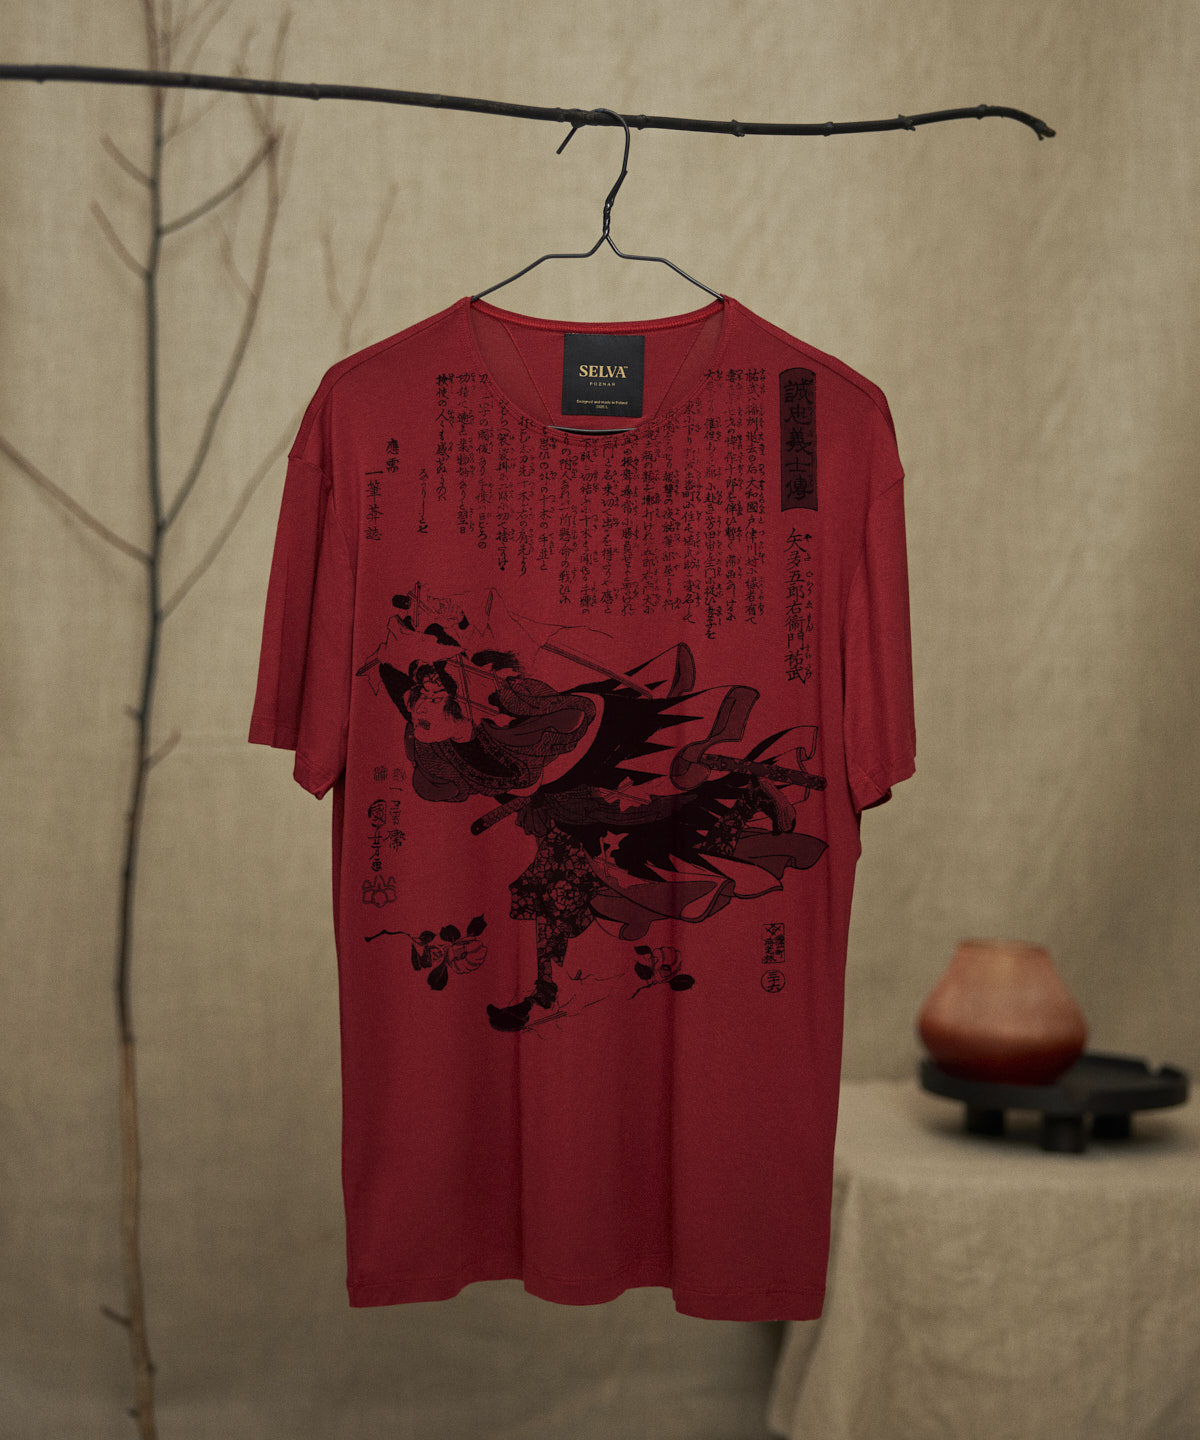 Utagawa Kuniyoshi no.92 marsala t-shirt men